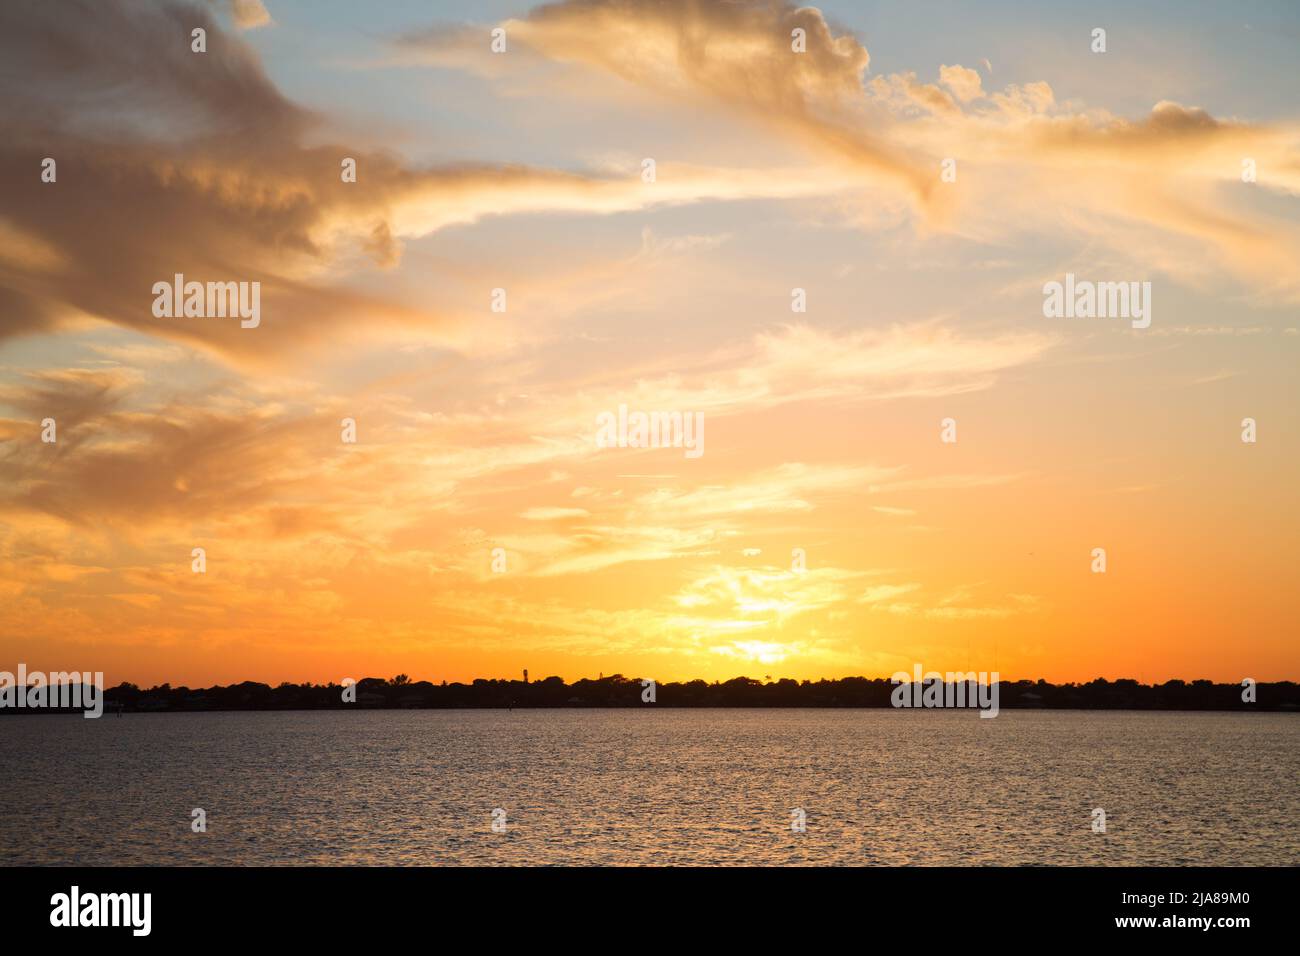 Phasen eines Sonnenuntergangs auf dem Meer mit der Sonne, die sich im Wasser spiegelt, Wolken am Himmel und einem Horizont, an dem das Wasser auf das Land trifft Stockfoto